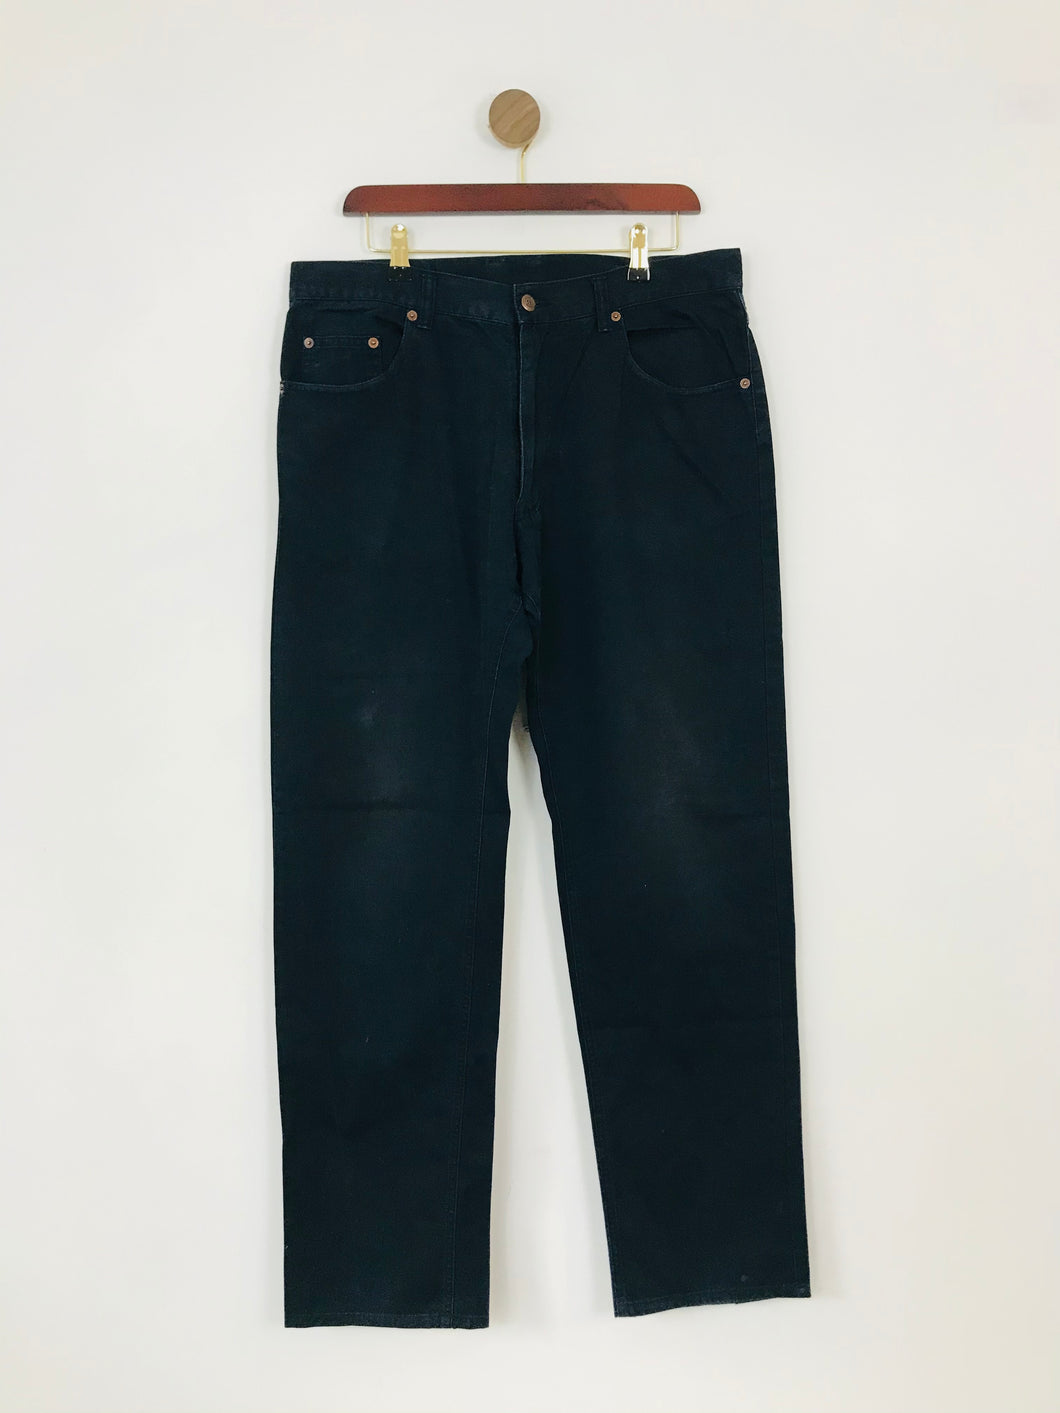 Marlboro Classics Men's Straight Jeans | W36 L34 | Blue